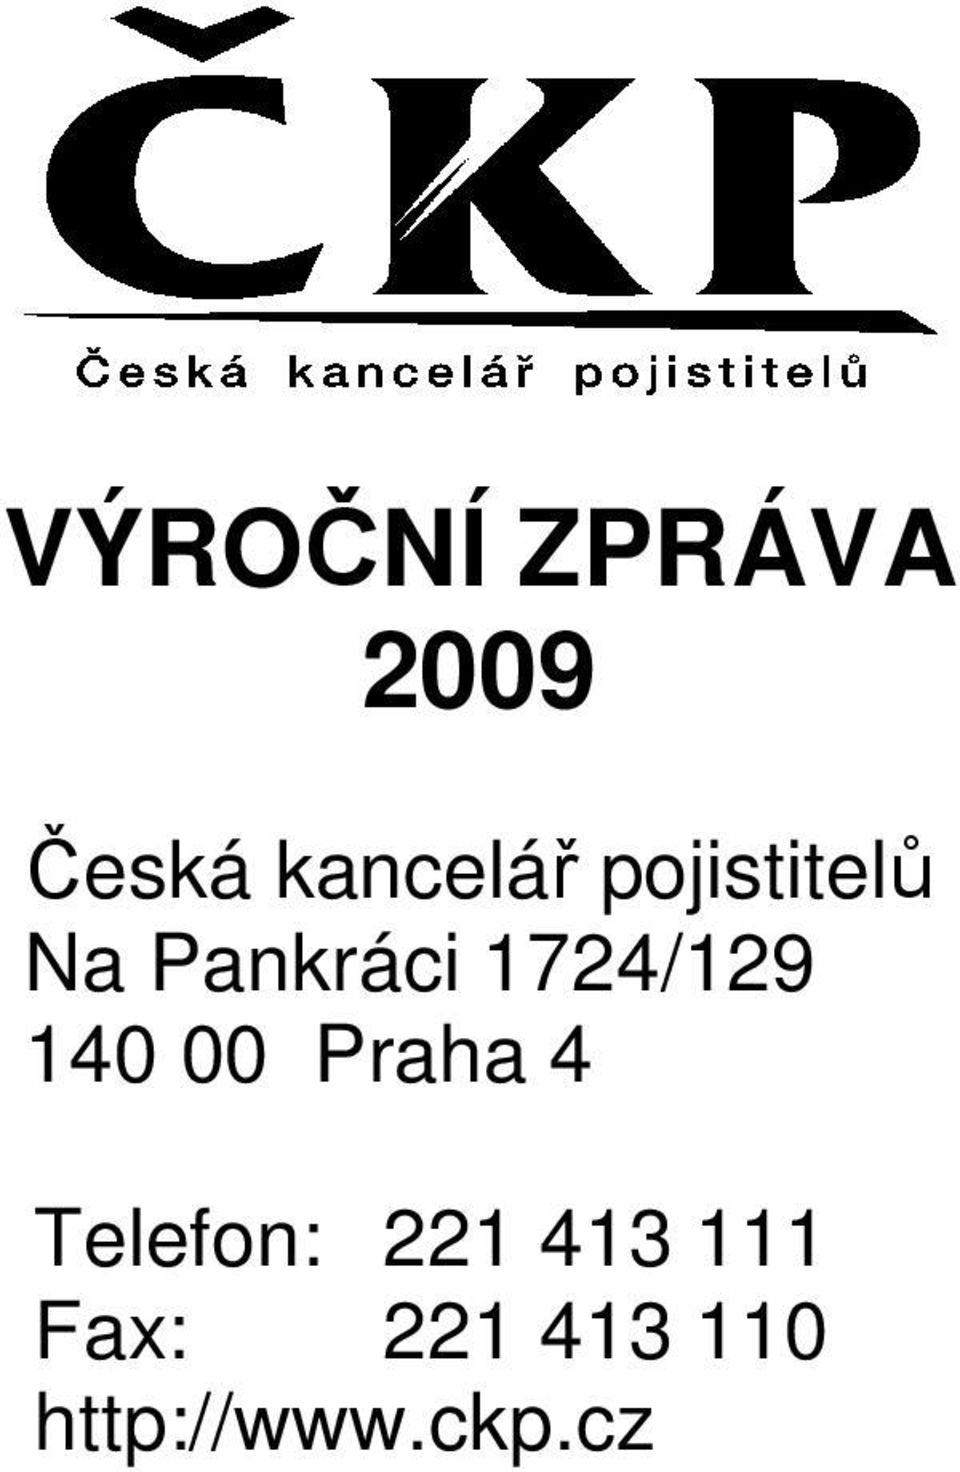 140 00 Praha 4 Telefon: 221 413